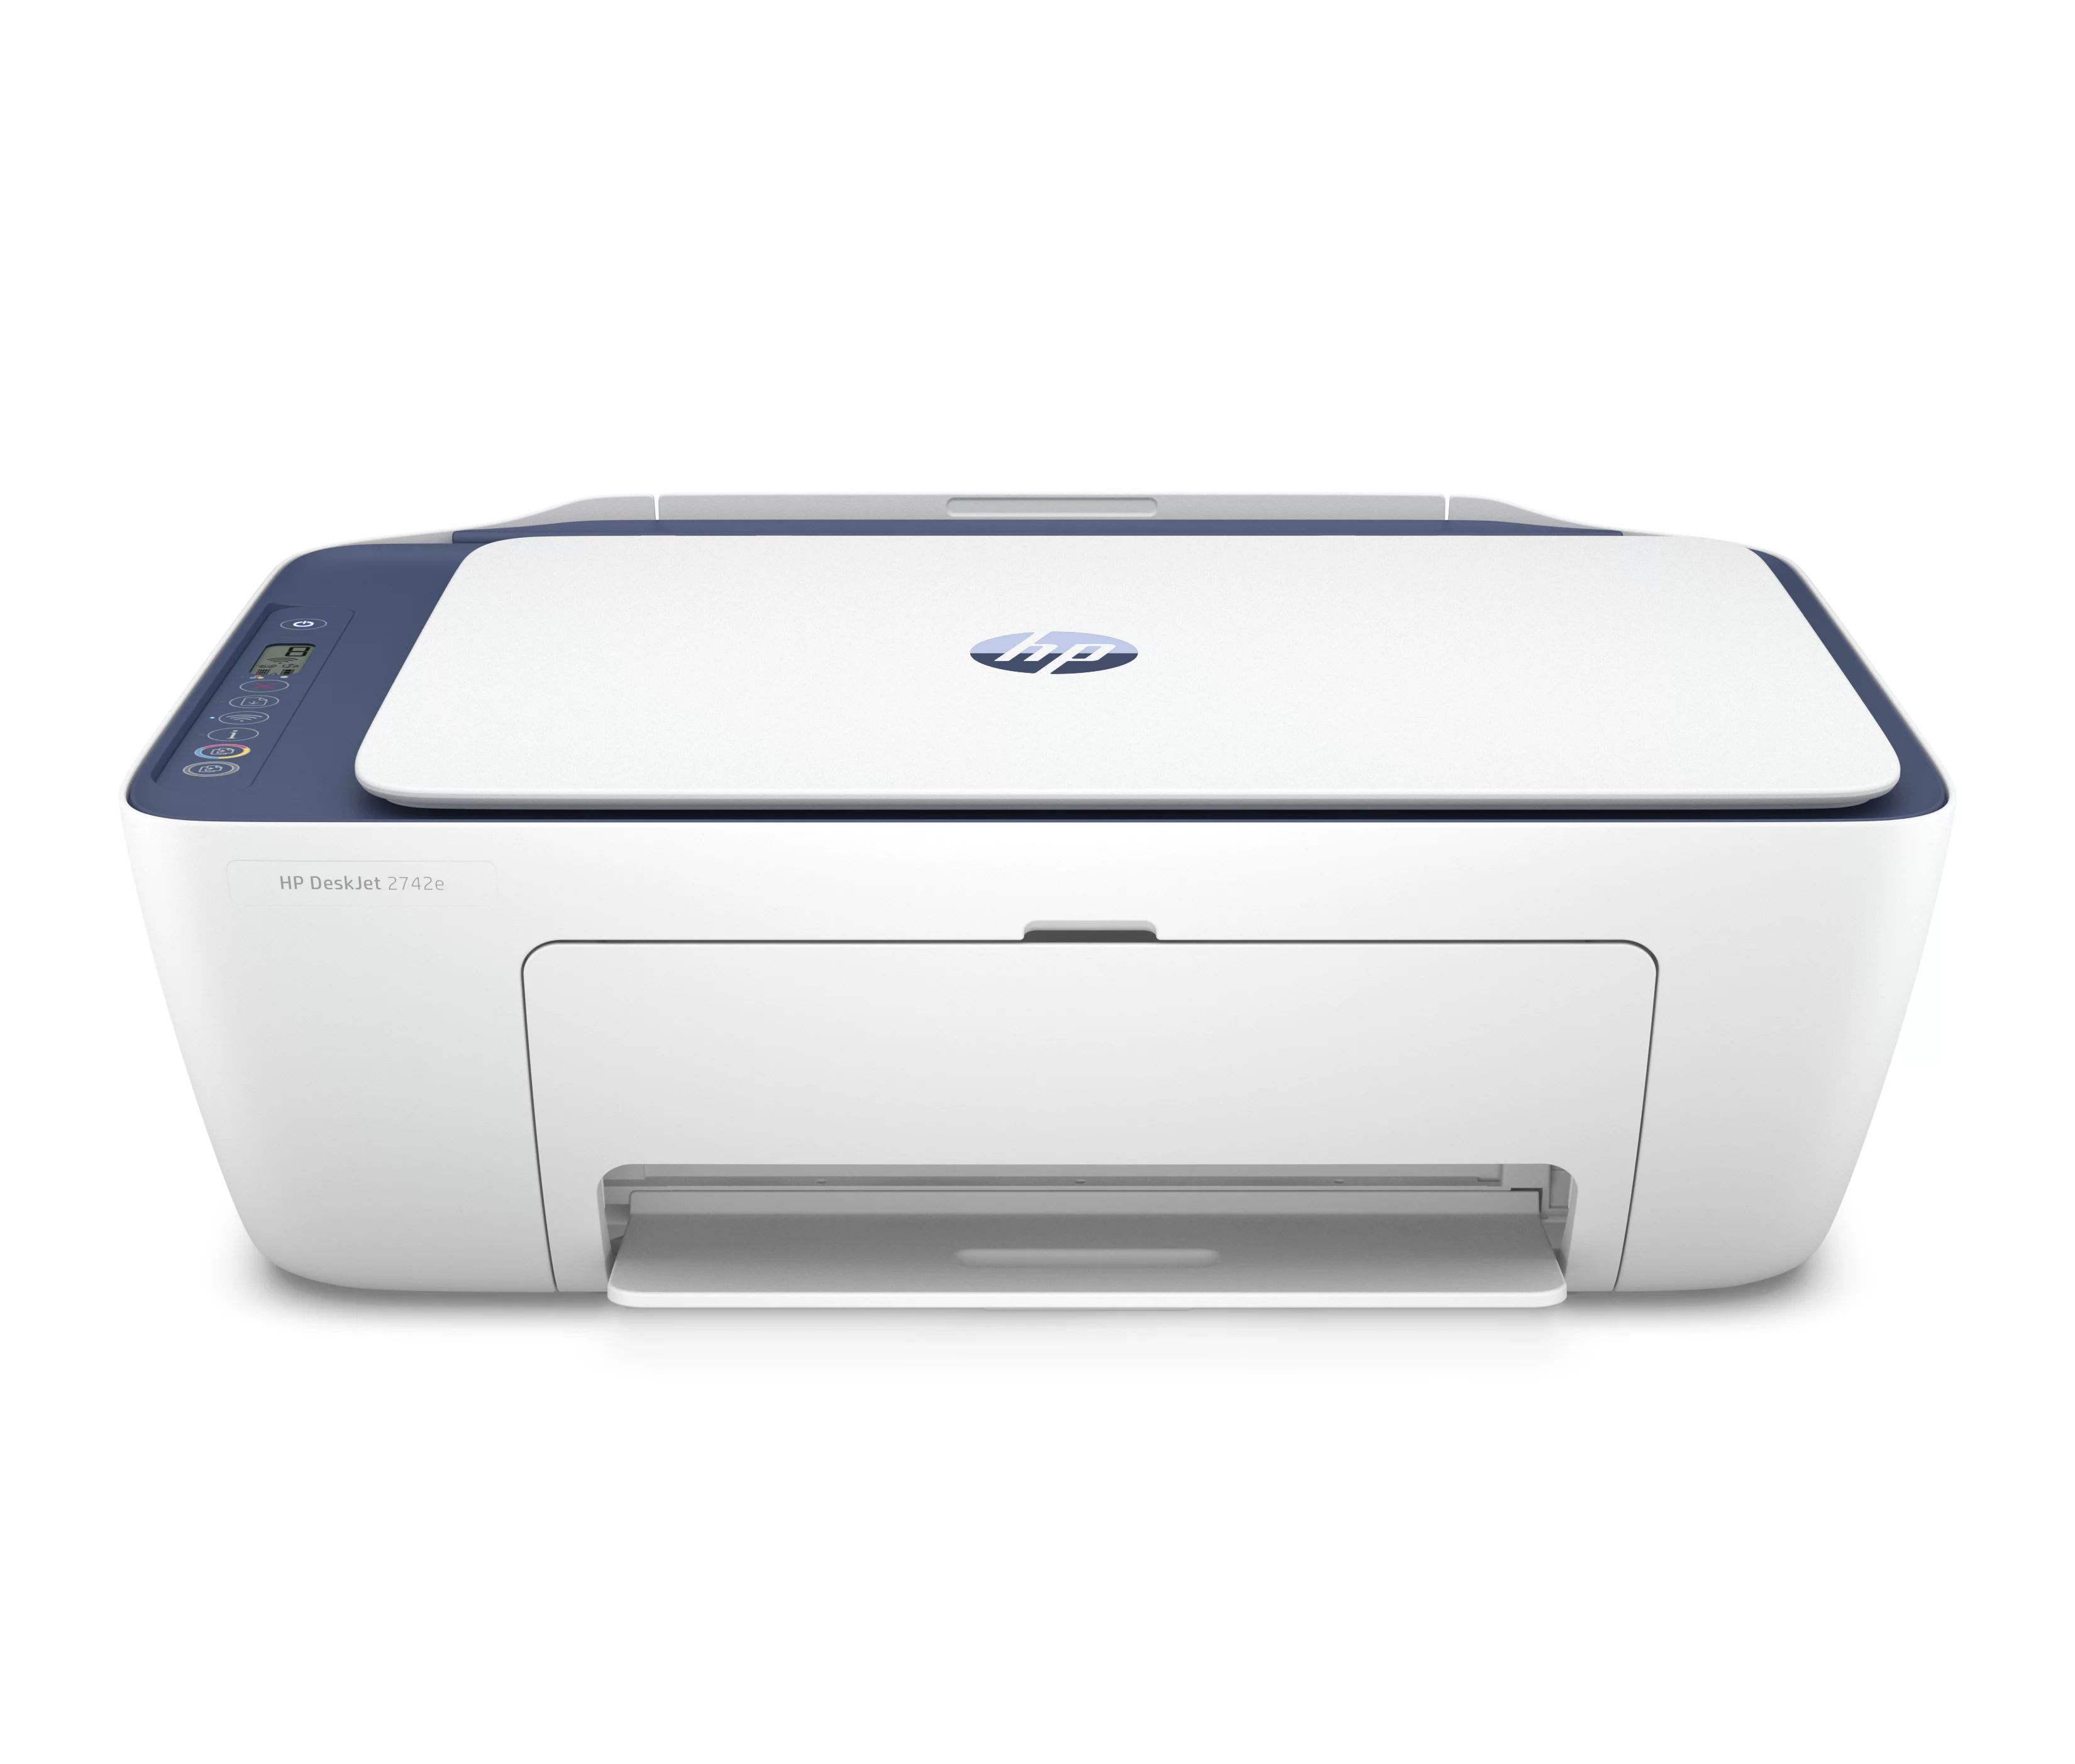 HP DeskJet 2742e All-in-One Wireless Color Inkjet Printer (Blue Steel) - 6 months free Instant In... | Walmart (US)